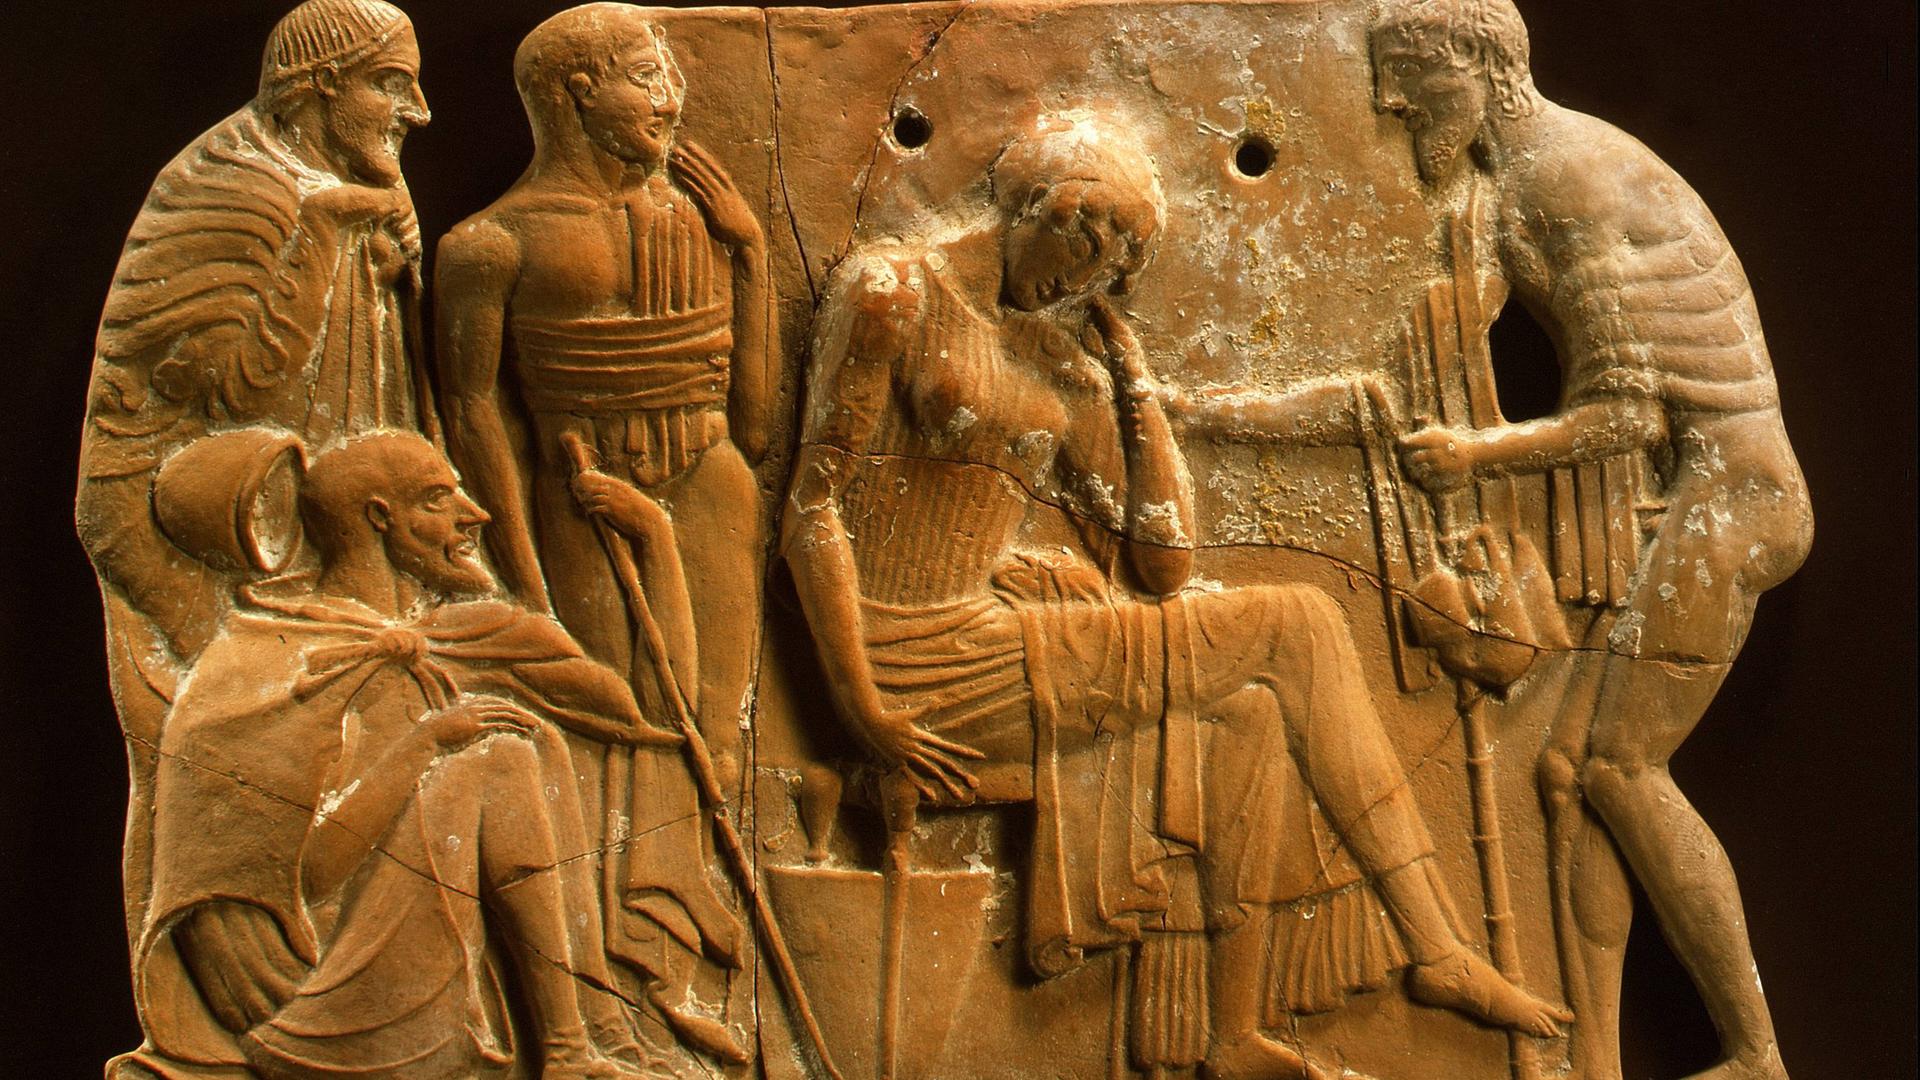 Eine Terrakotta-Plakette, ca. 460-450 vor Christus: Während Odysseus' Irrfahrt wurde seine Frau Penelope von mächtigen Freiern bedrängt, doch sie wartete treu auf ihn.